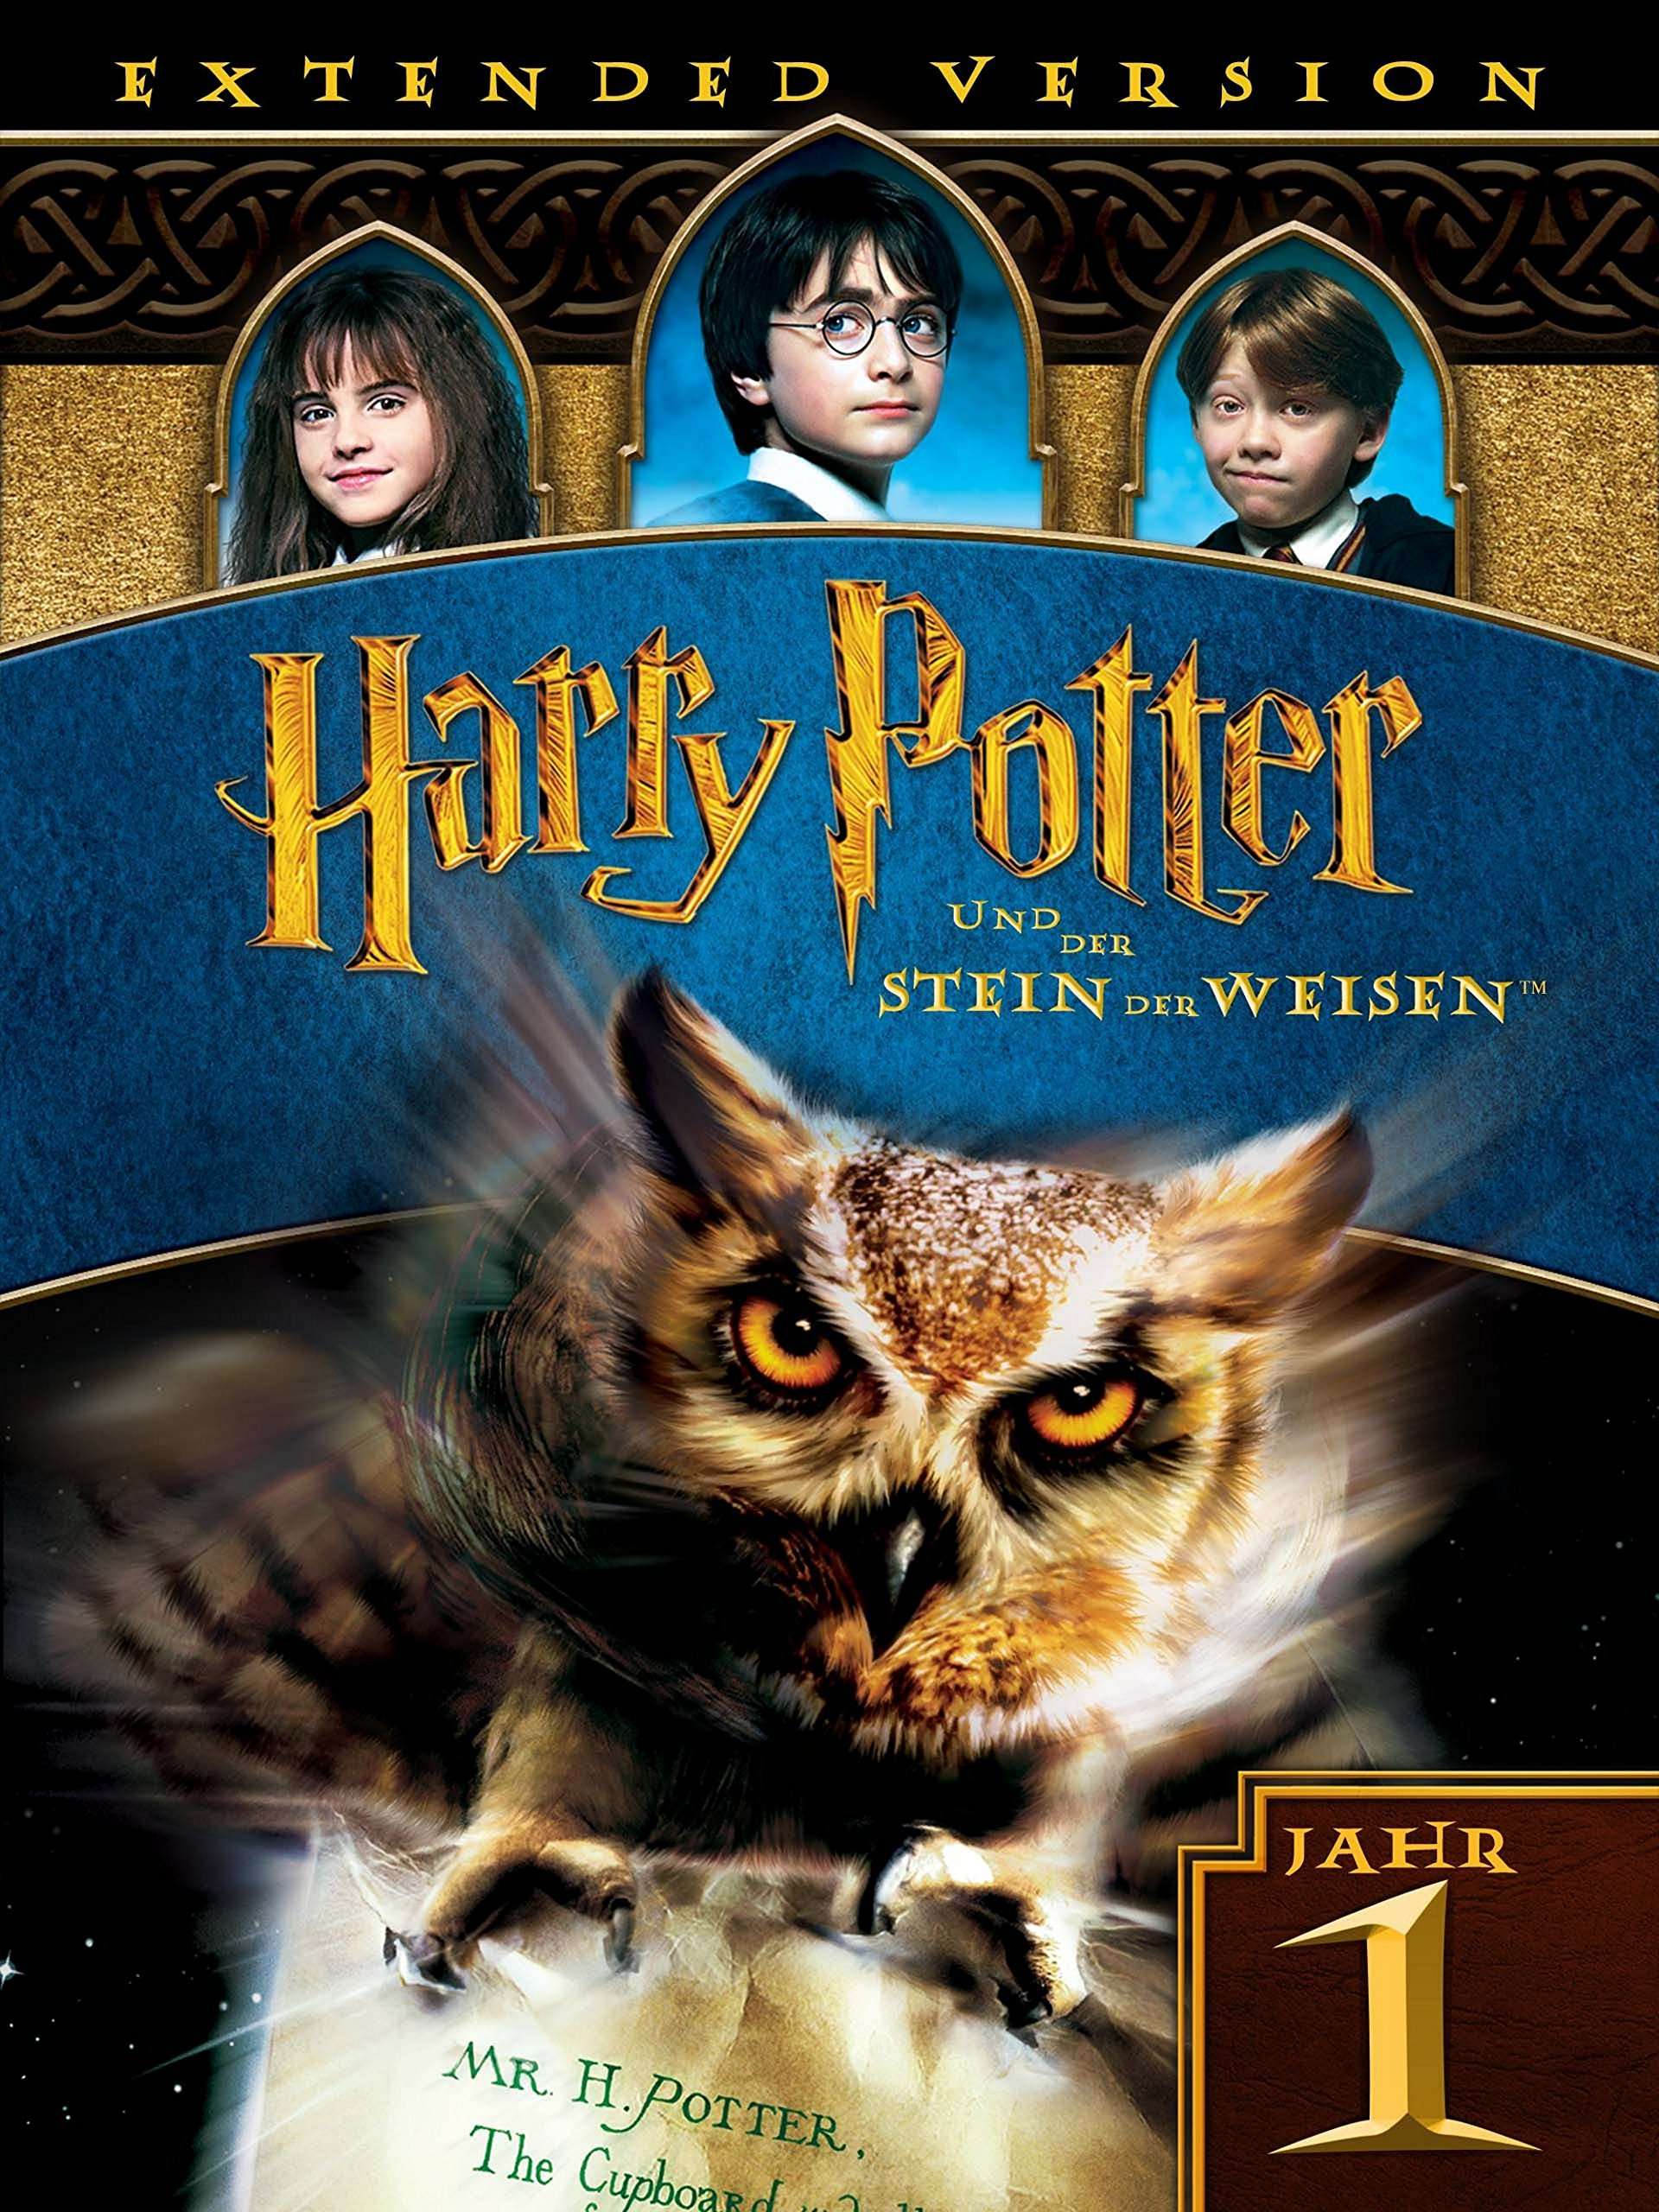 Amazon.de: Harry Potter und der Stein der Weisen (Extended ...